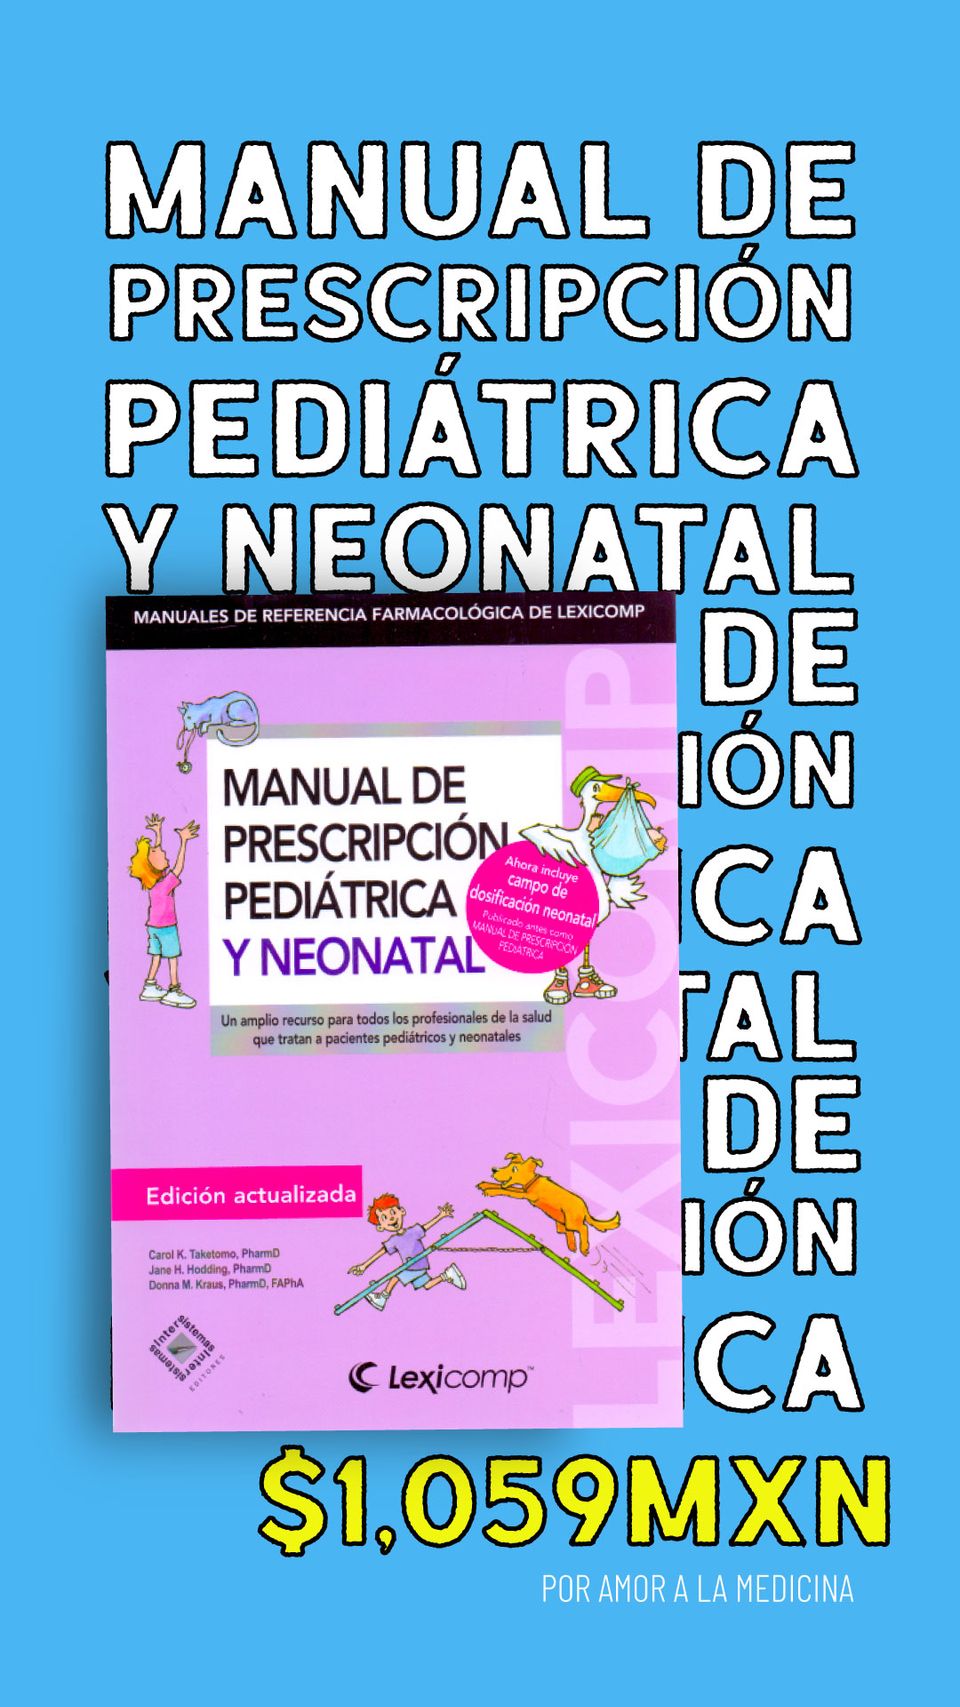 Manual de prescripción pediátrica y neonatal